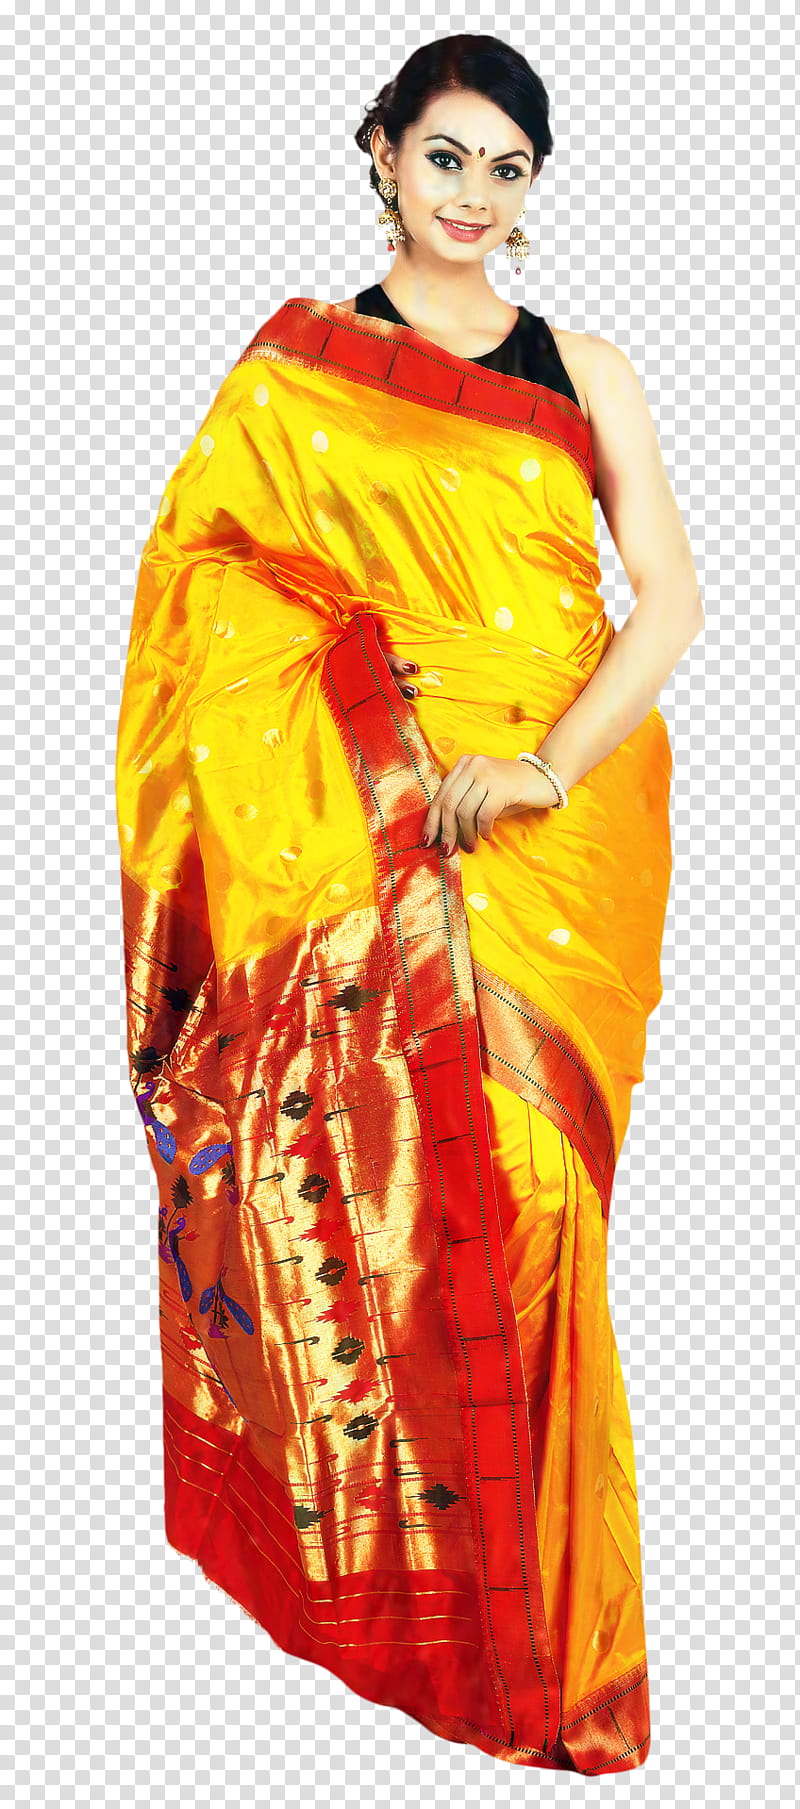 India Wedding, Sari, Wedding Sari, Paithani, Yeola, Dress, Clothing, Clothing In India transparent background PNG clipart